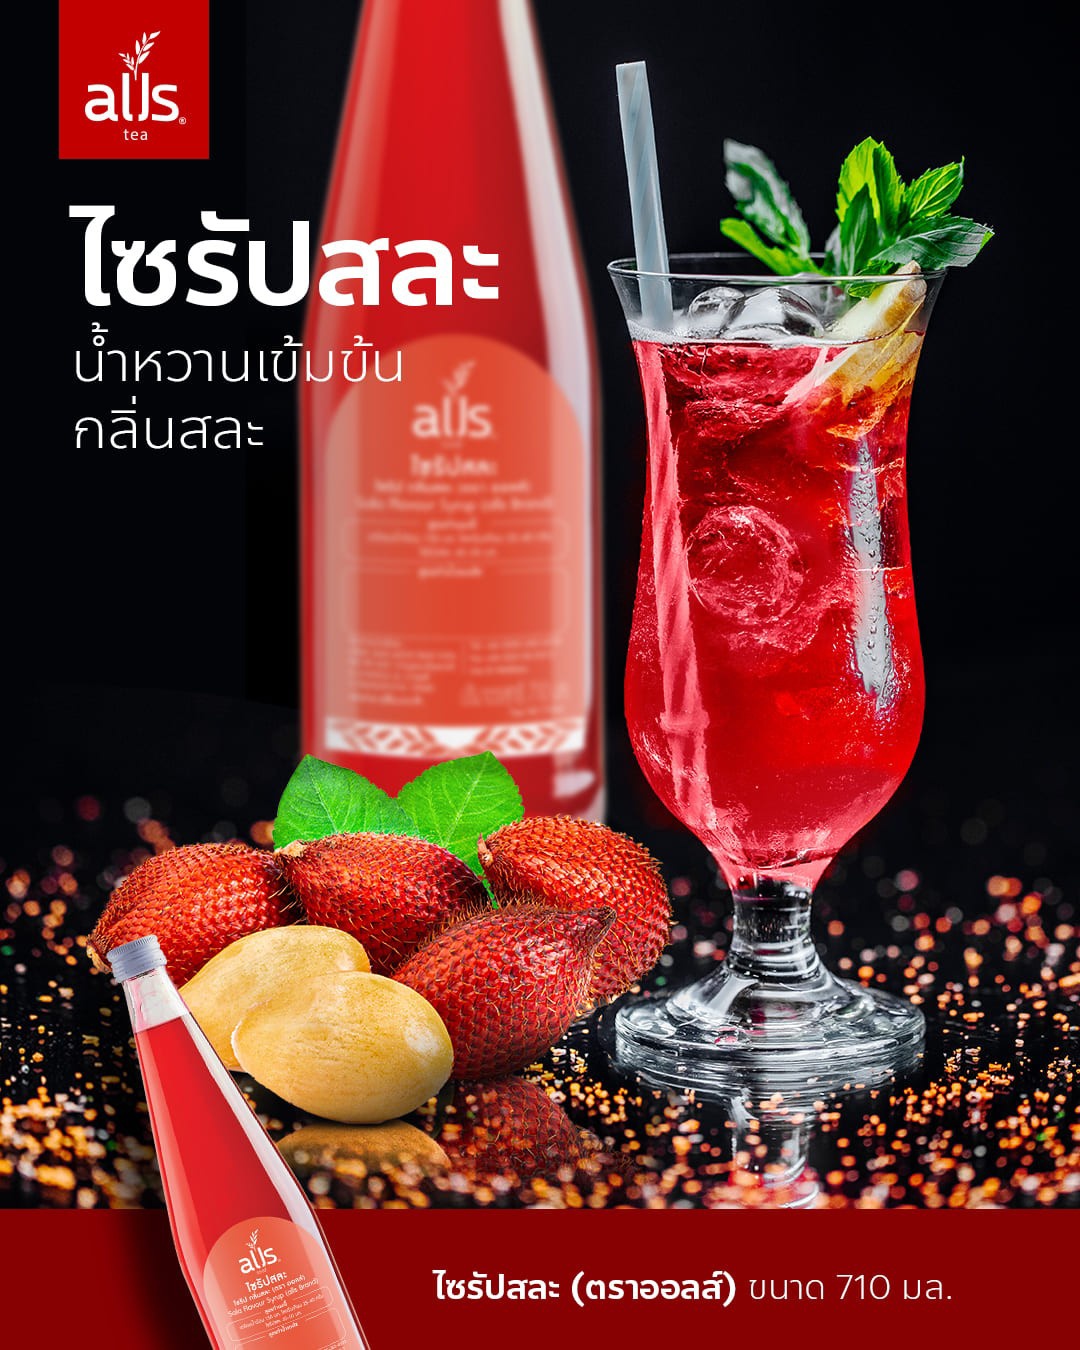 ไซรัปสละ (ตราออลส์) 710มล. ไซรัป สละ กลิ่นสละ รสสละ เข้มข้น sala flavour syrup alls Thailand